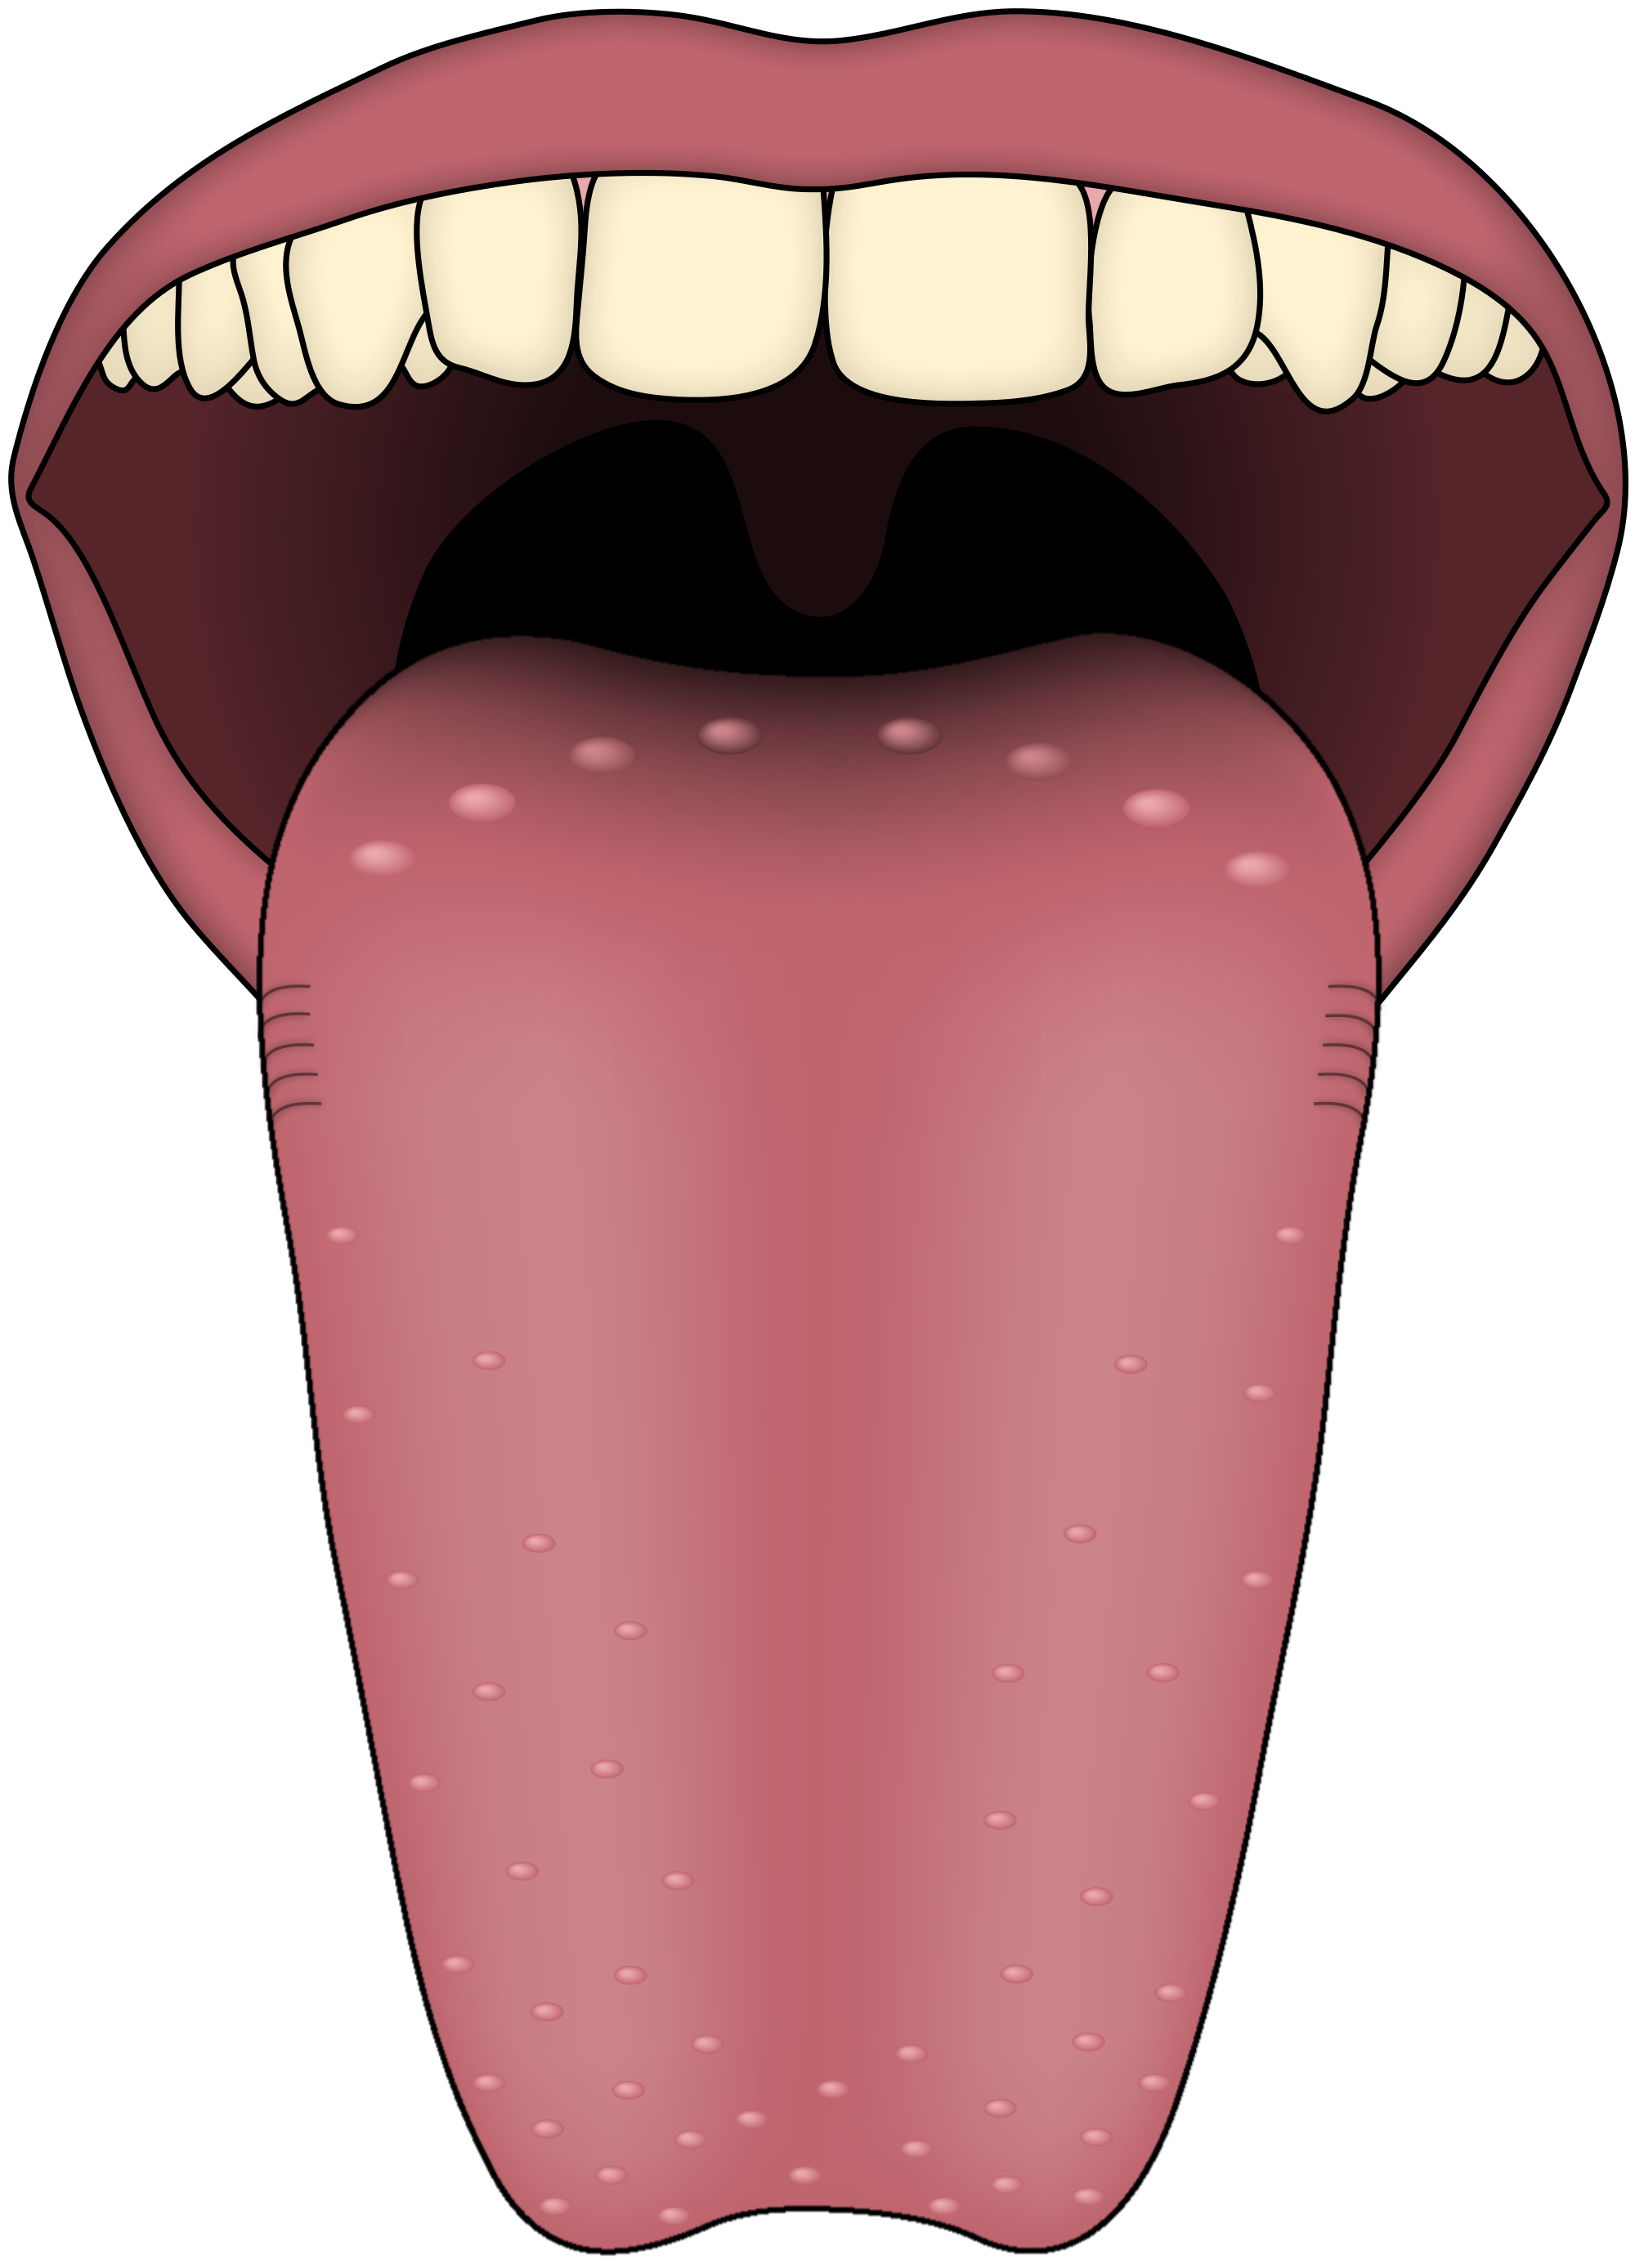 Tongue PNG Image File